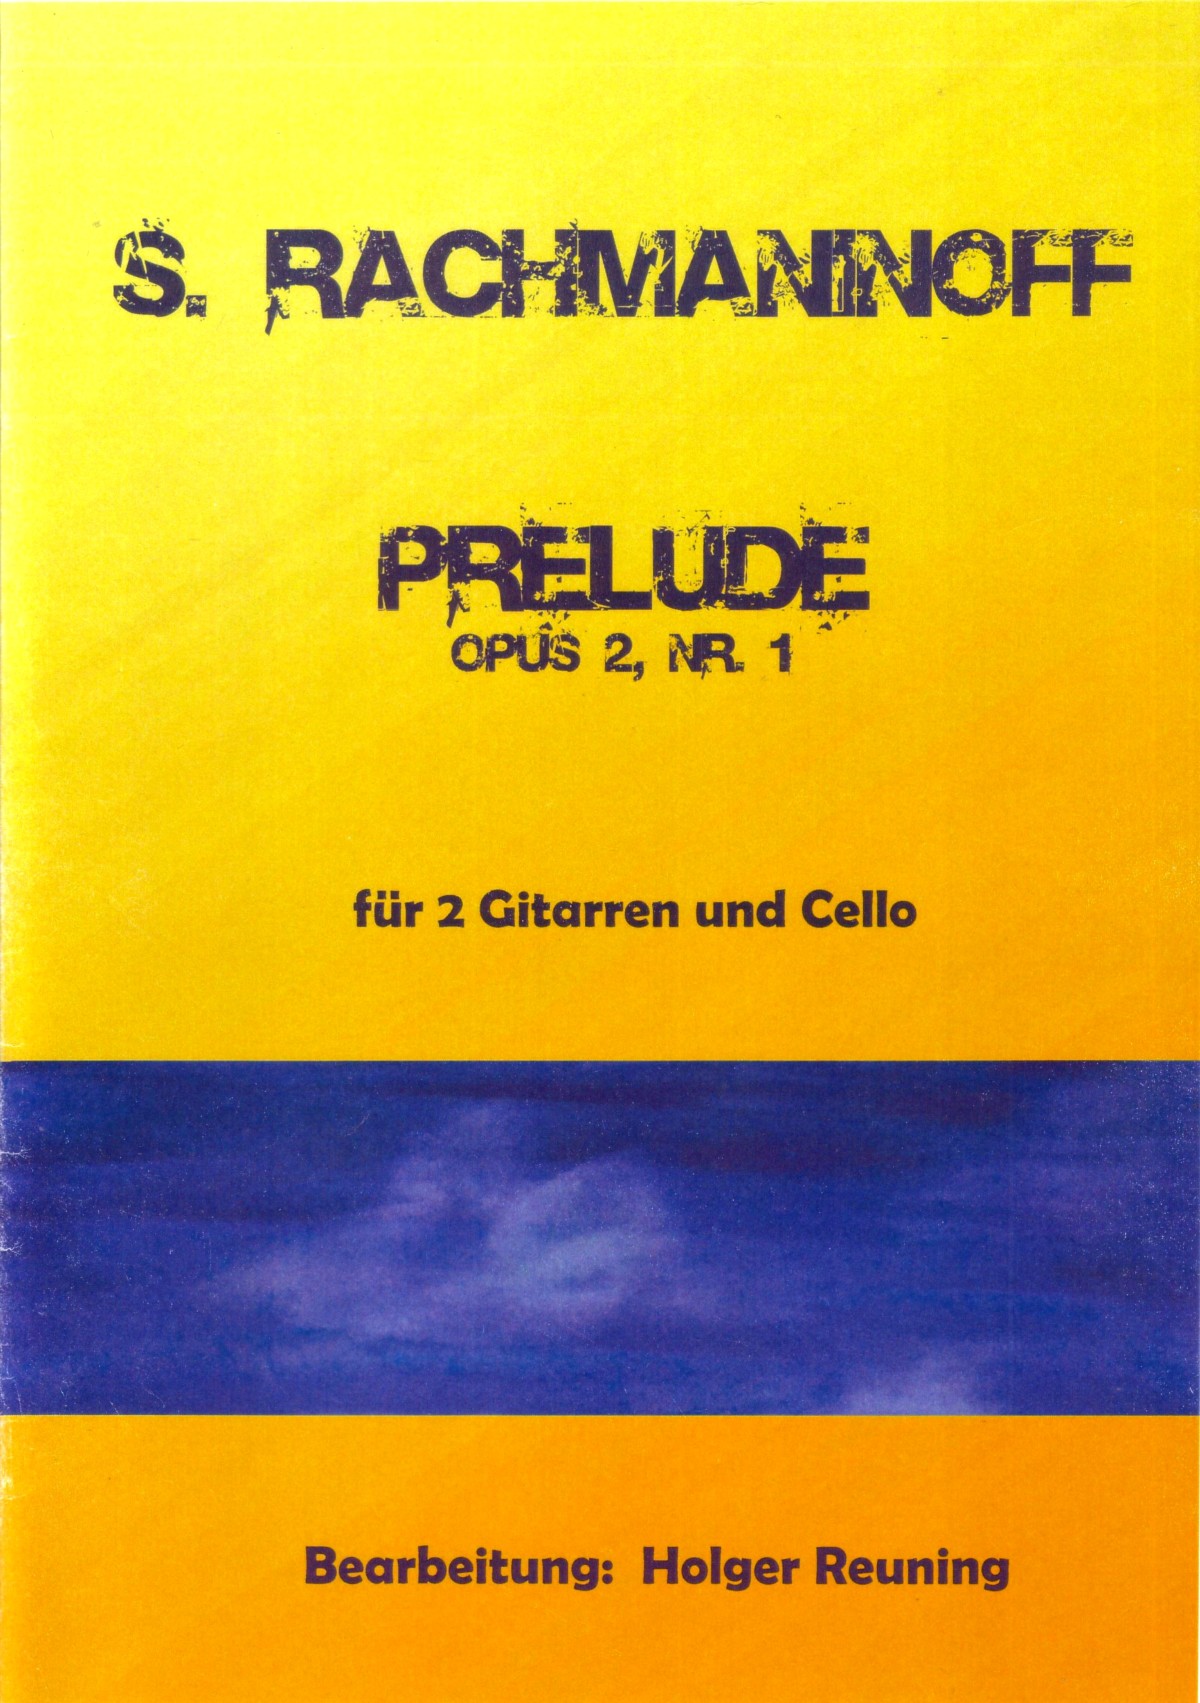 Rachmaninoff Gitarren Cello Holger Reuning Prelude